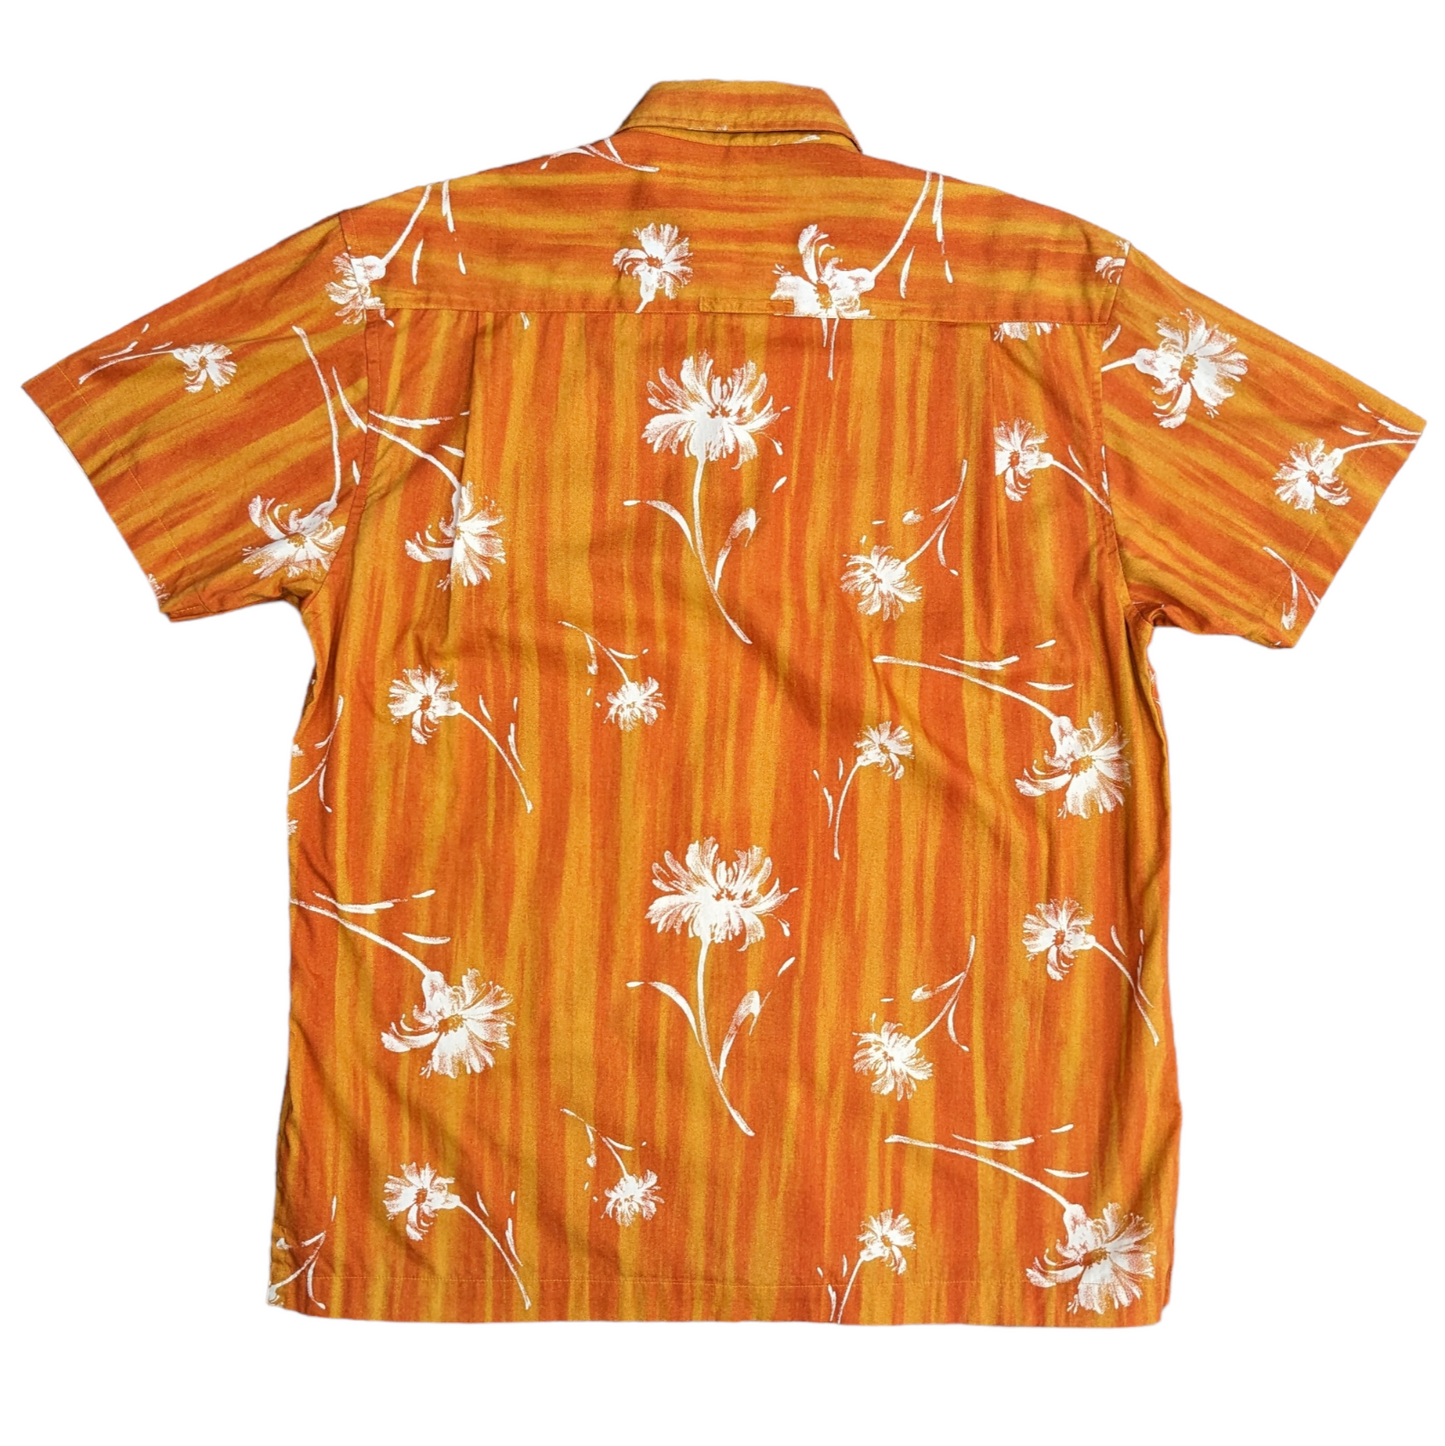 90s Ben Sherman Hawaiian Shirt Size M